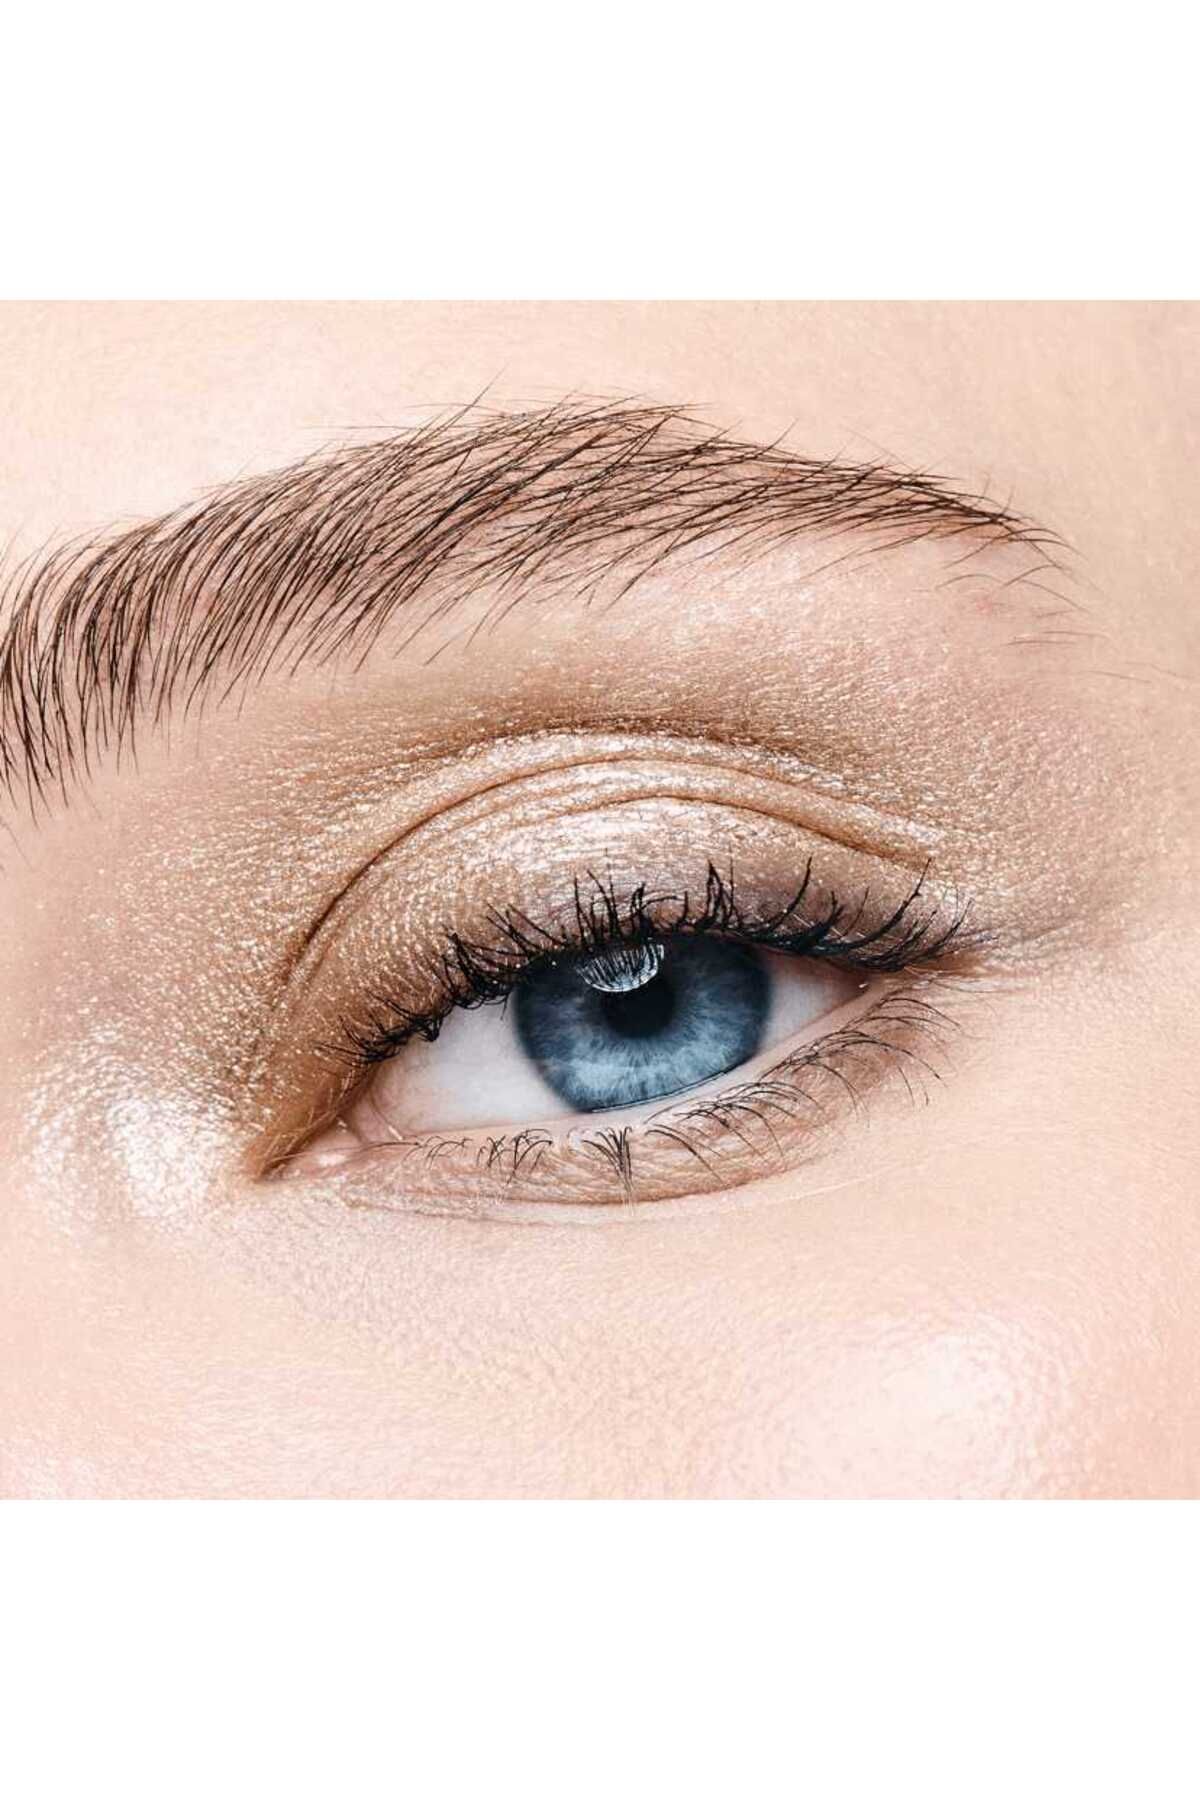 Oriflame THE ONE 8 Saat Boyunca Kalıcı Etki Sunan Yüksek Pigmentasyon Likit Göz Farı